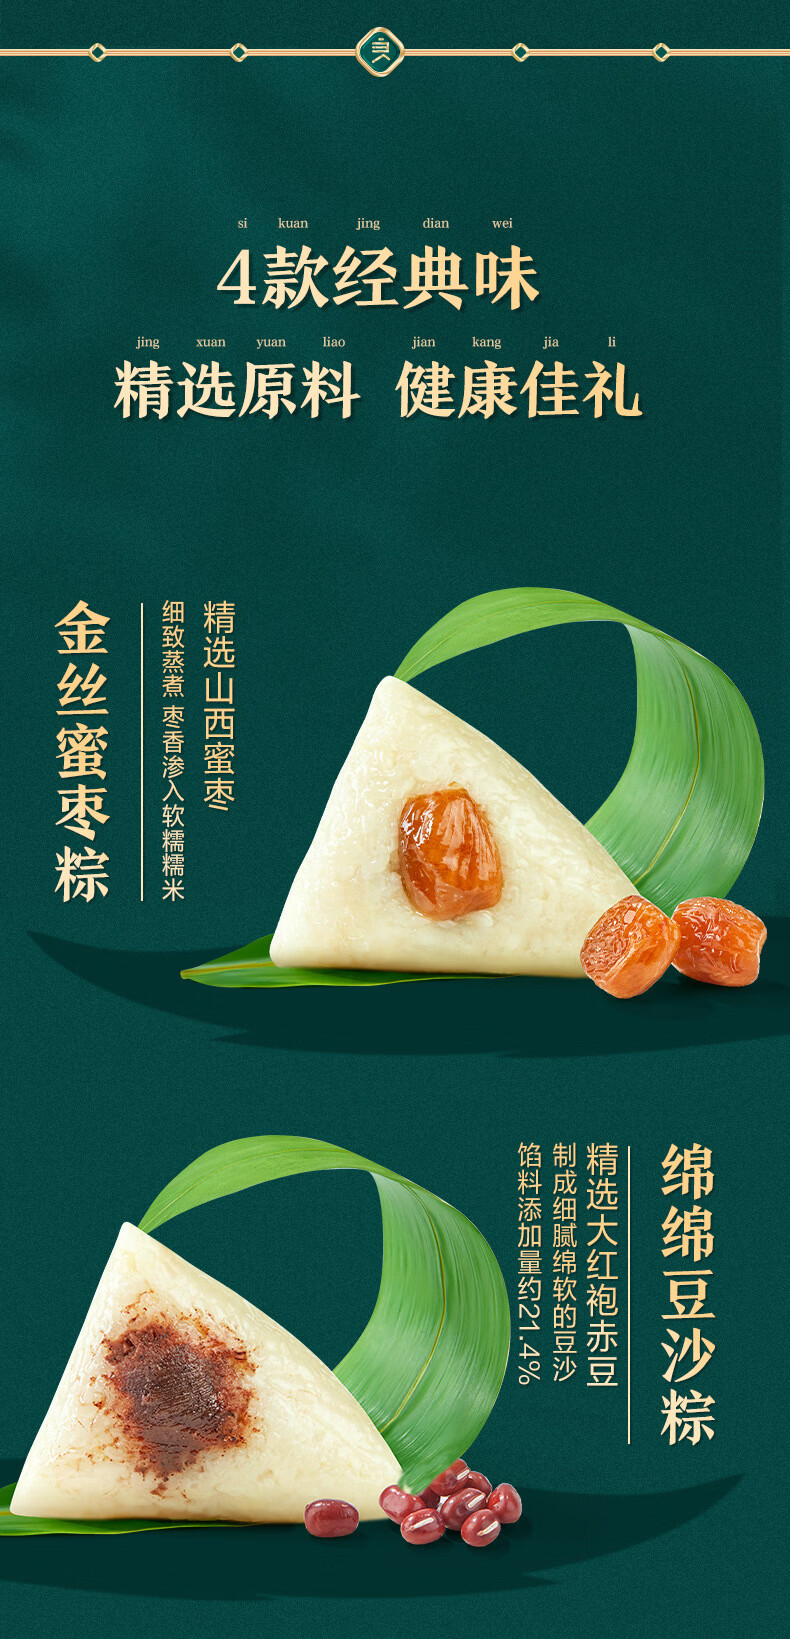 良品铺子粽子悦福经典粽礼1120g蛋黄肉蜜枣粽手工豆沙端午节团购-产品名称-粽子